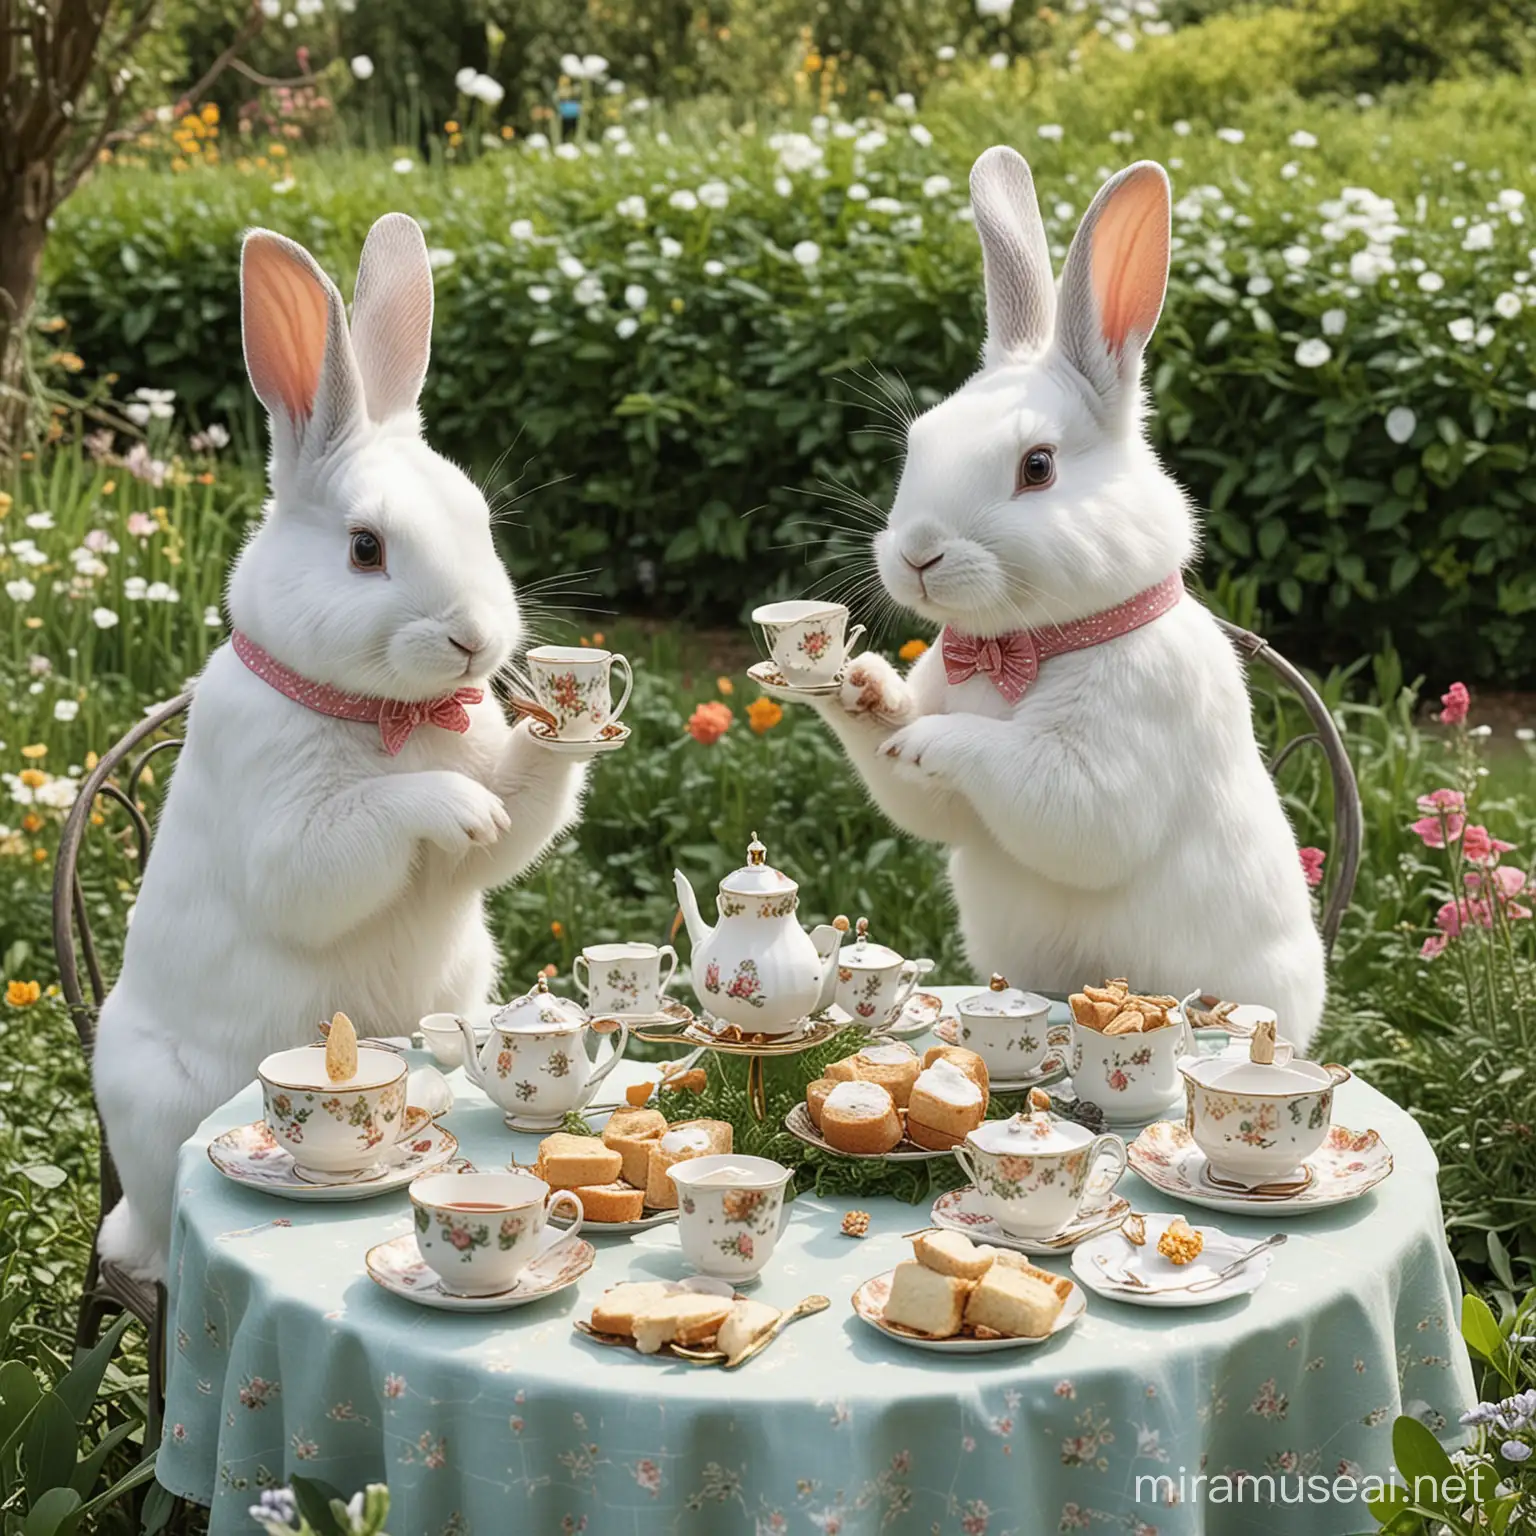 Elegant Rabbit Tea Party in the Garden